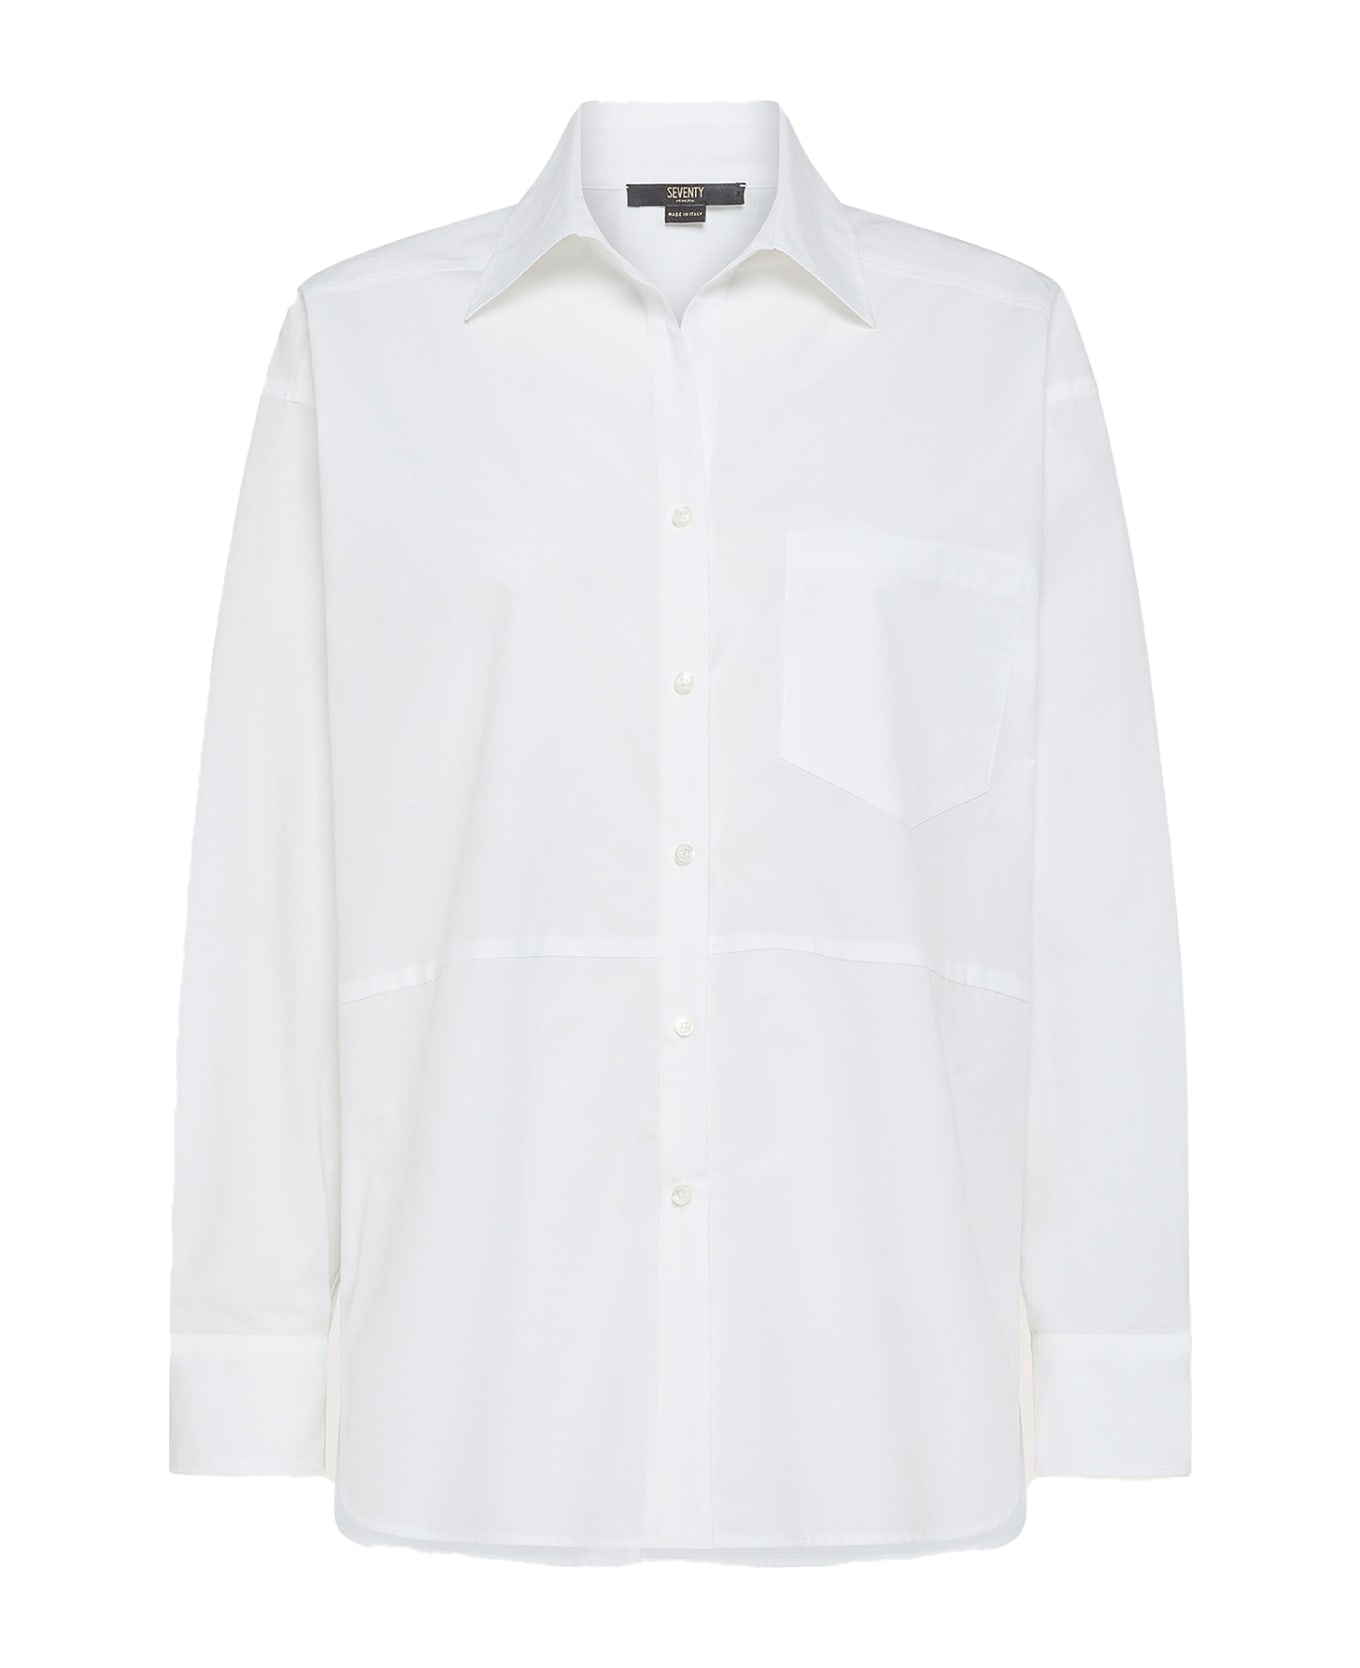 Seventy Oversized White Shirt With Pocket - BIANCO